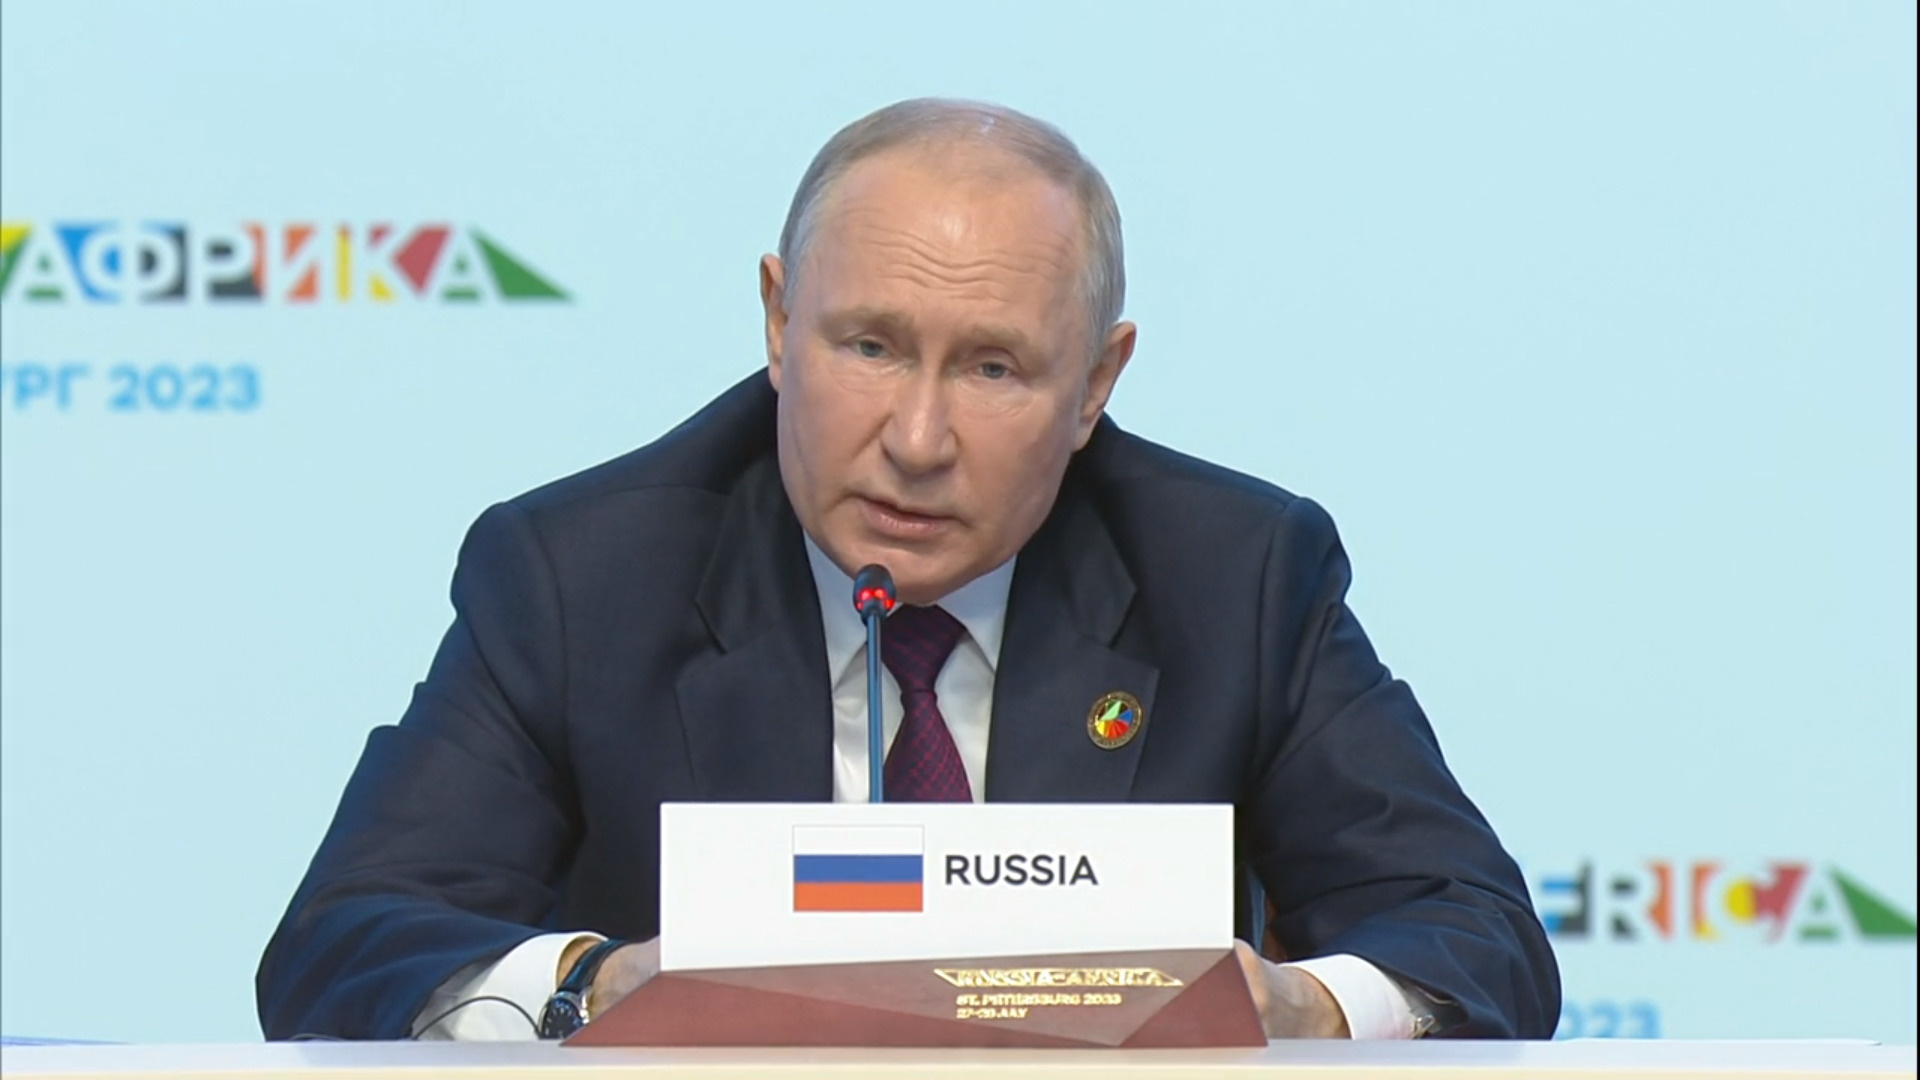 По словам Путина, Россия готова к переговорам, но не может «навязывать их»